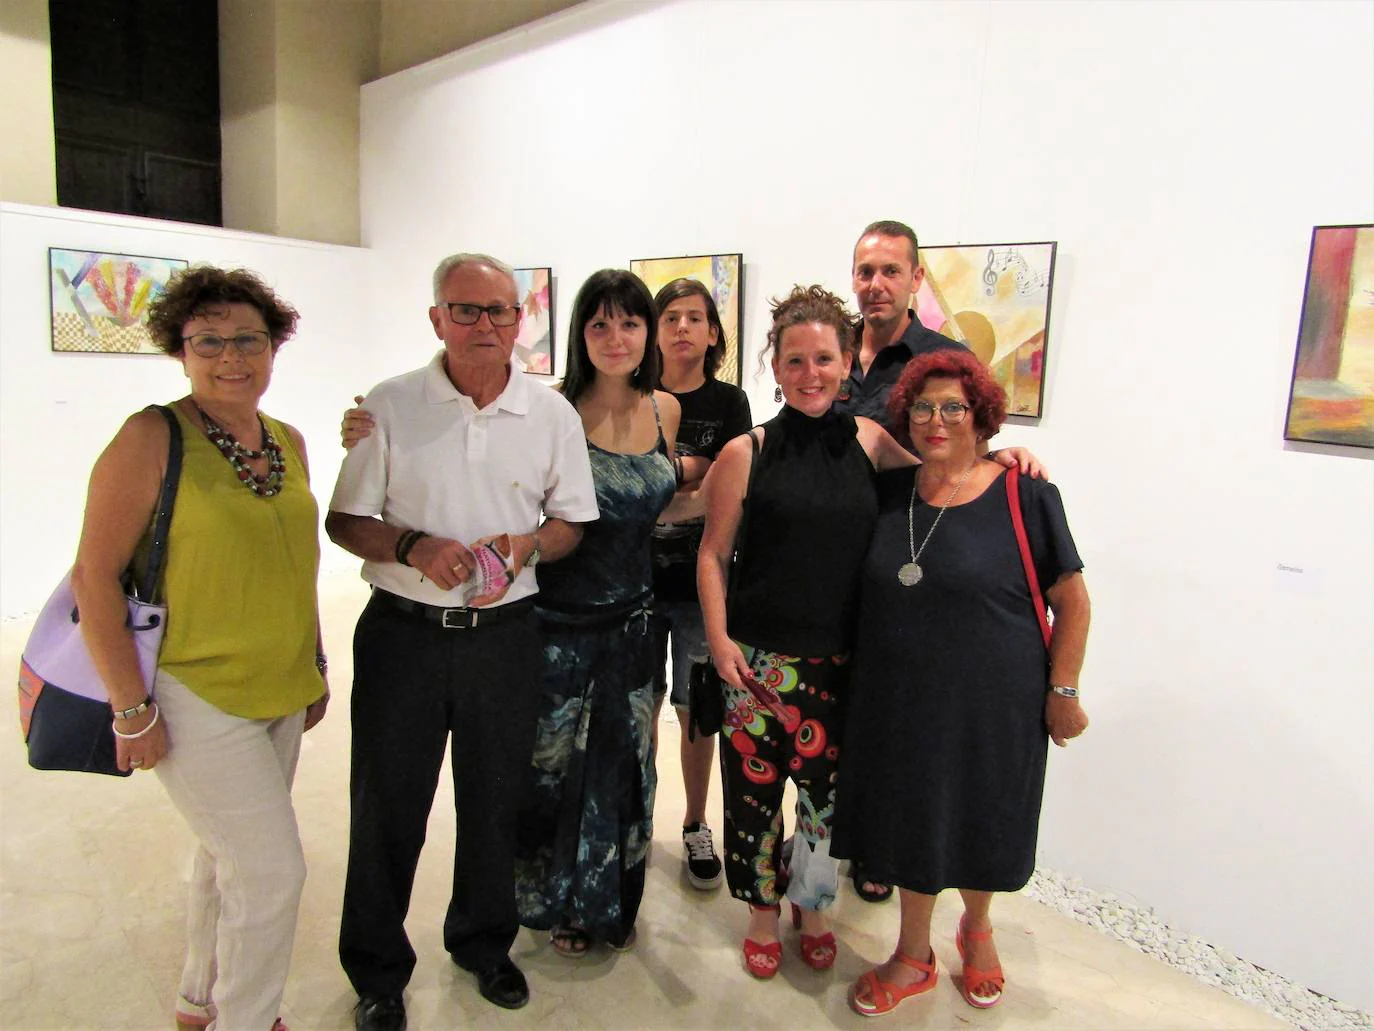 Hasta el 21 de septiembre, el Centro de Iniciativas Culturales 'El Pósito' de Loja acoge la muestra de Andrés Ortiz, con más de 40 obras en acuarela y collage en torno a los más diversos temas, fruto de la observación.